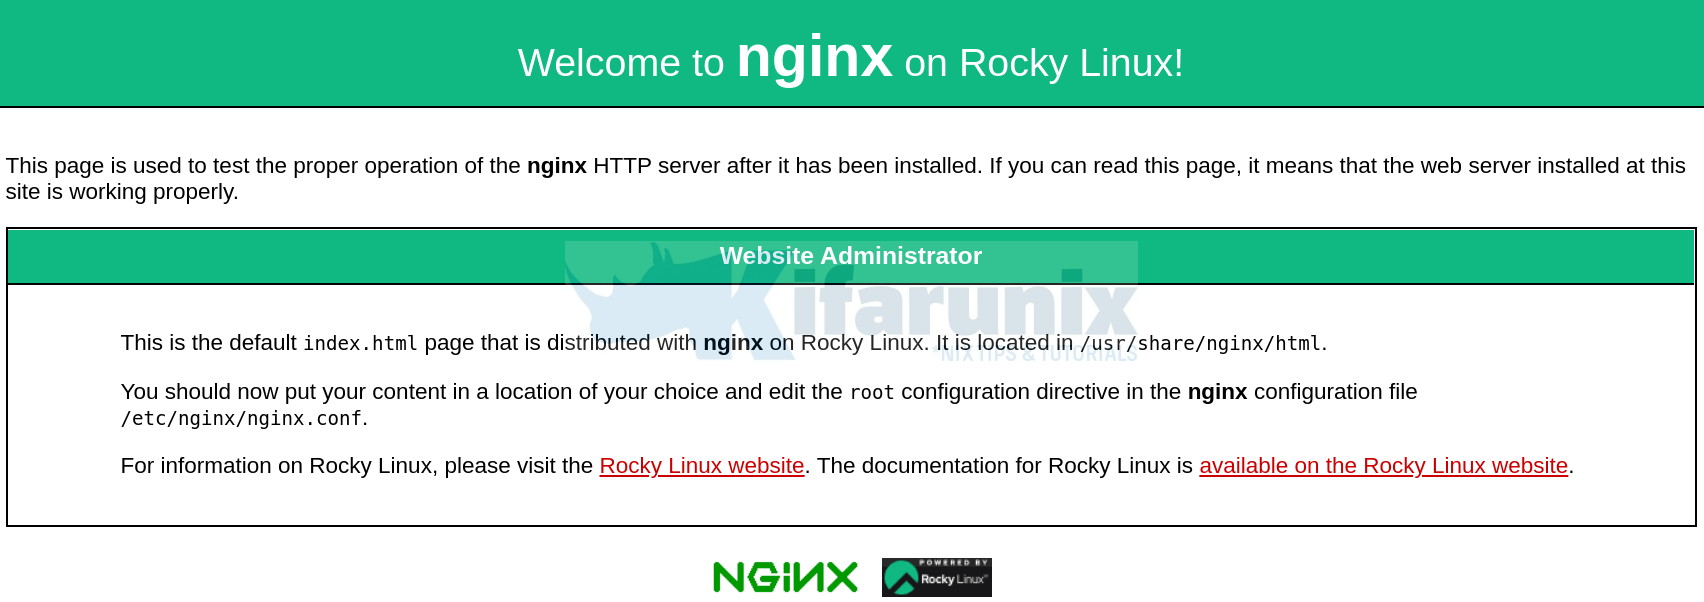 rocky linux